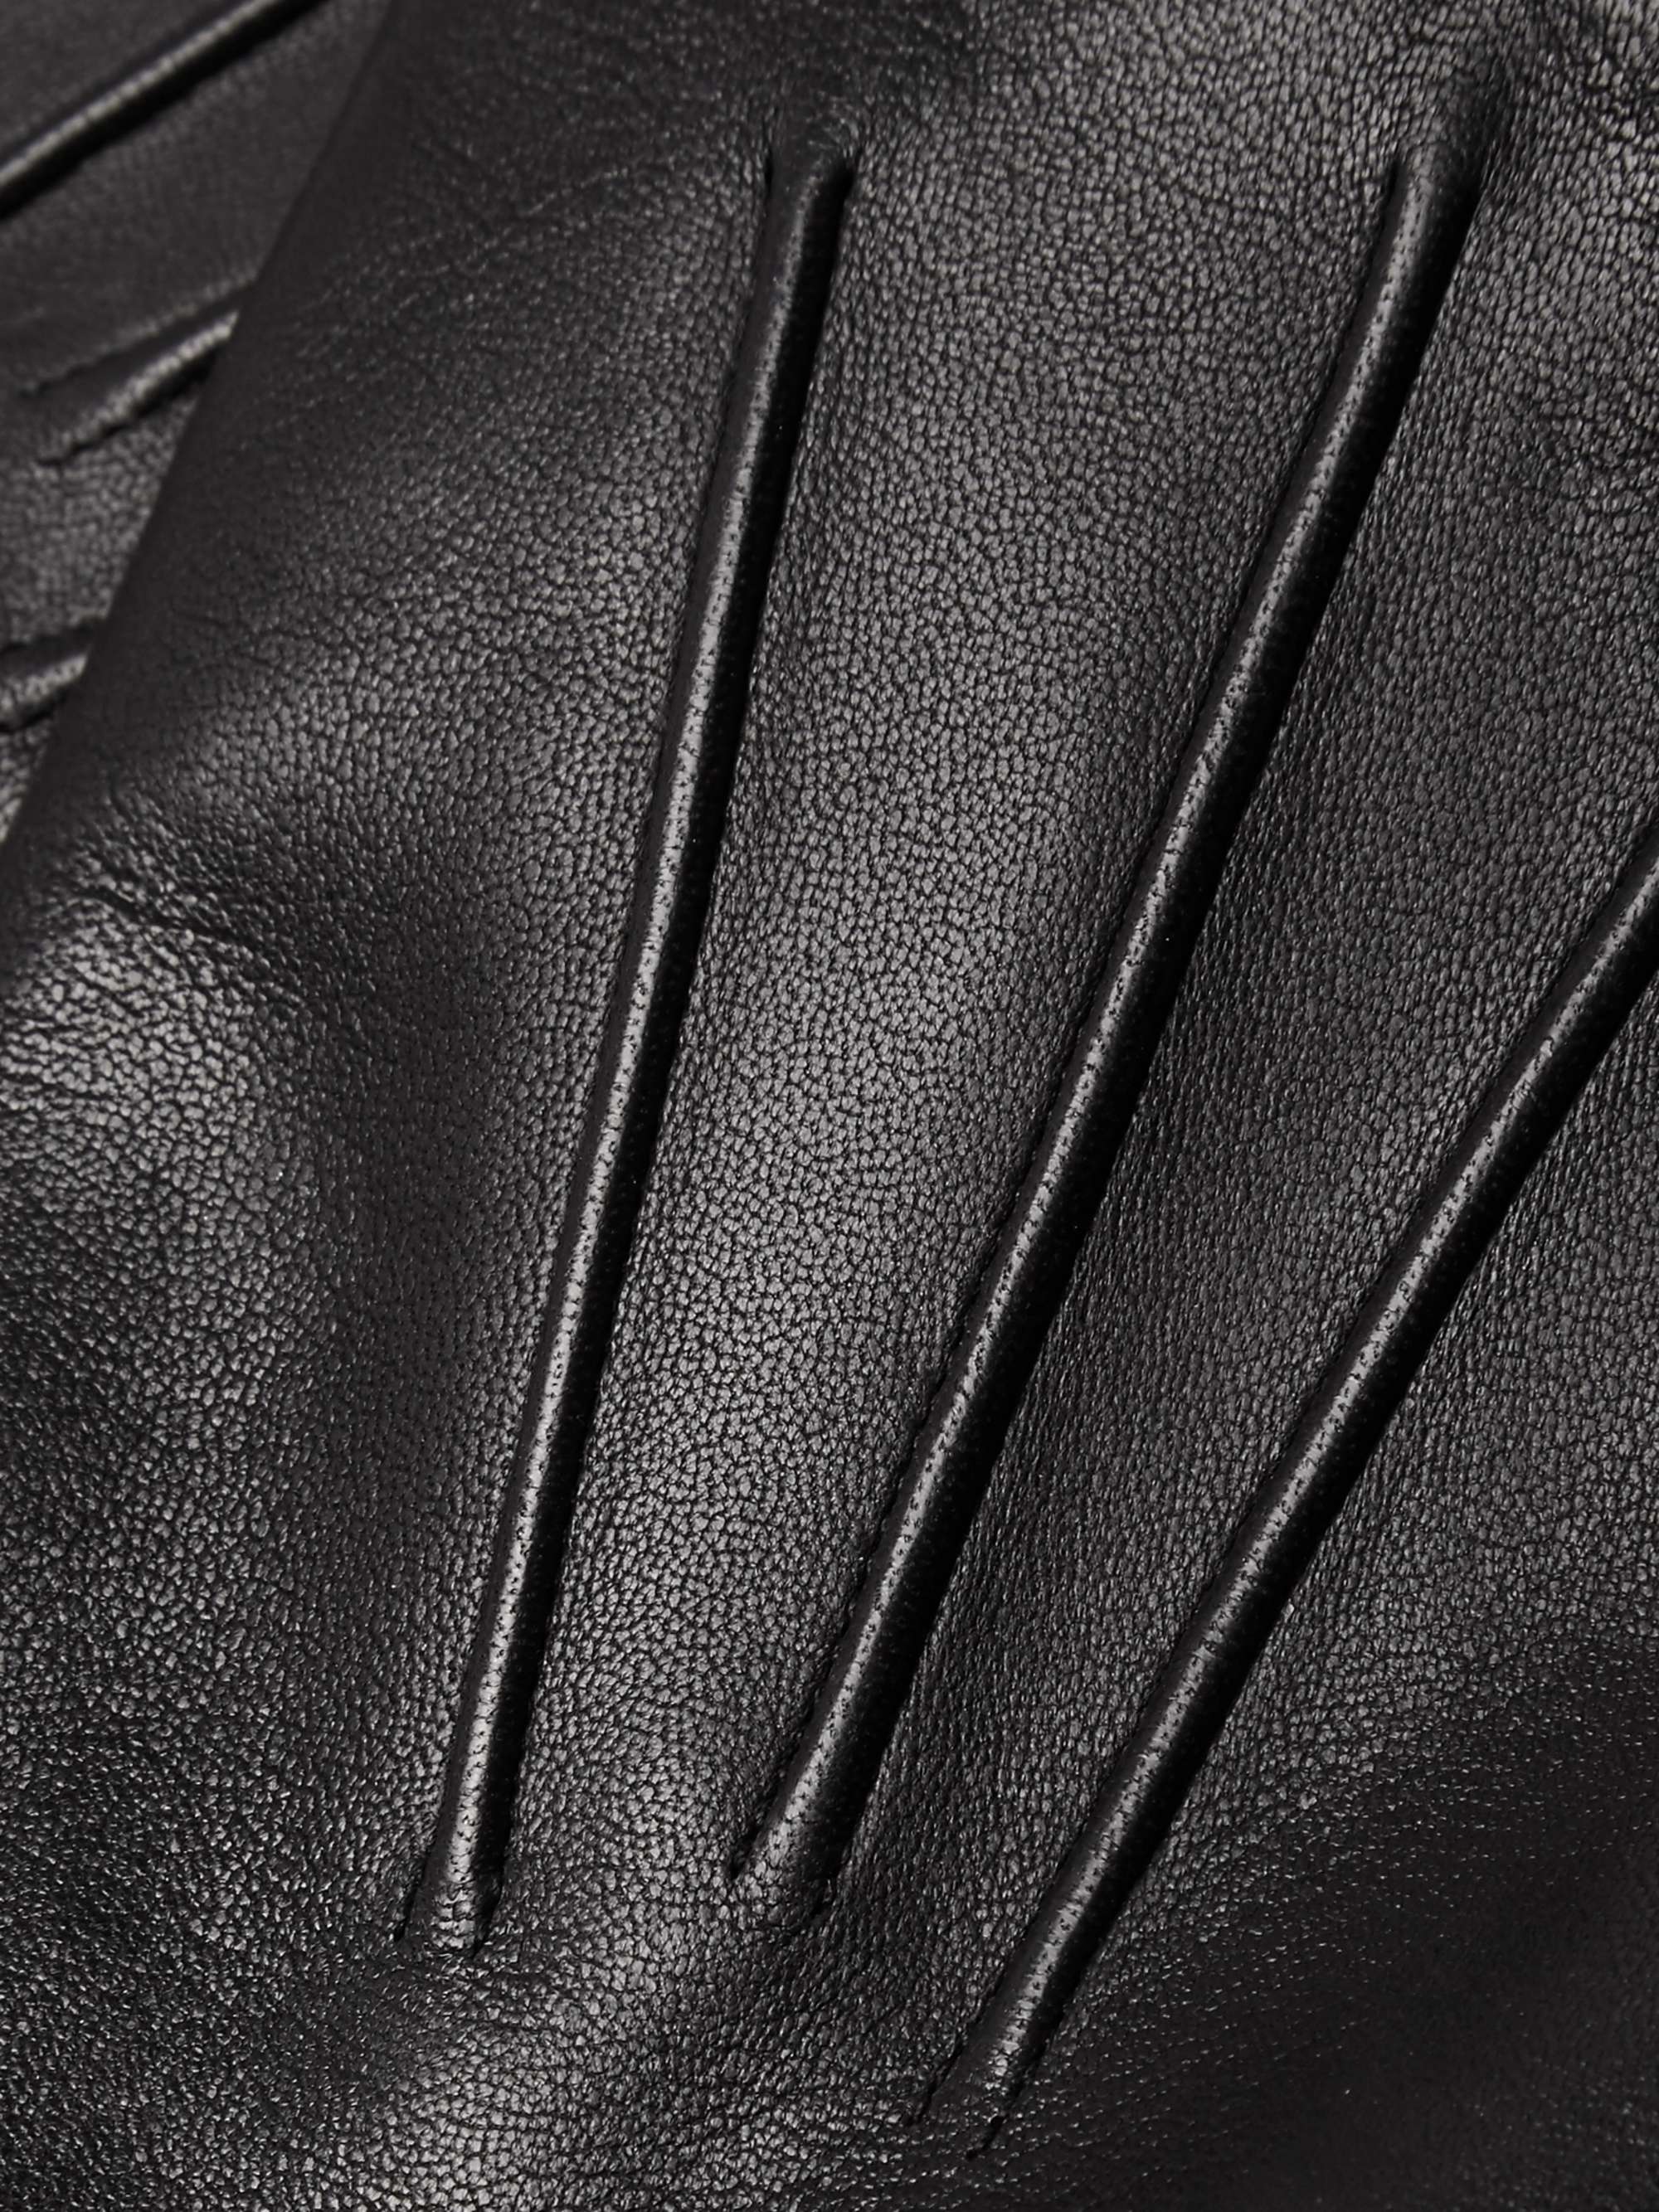 DENTS Bath Cashmere-Lined Leather Gloves for Men | MR PORTER